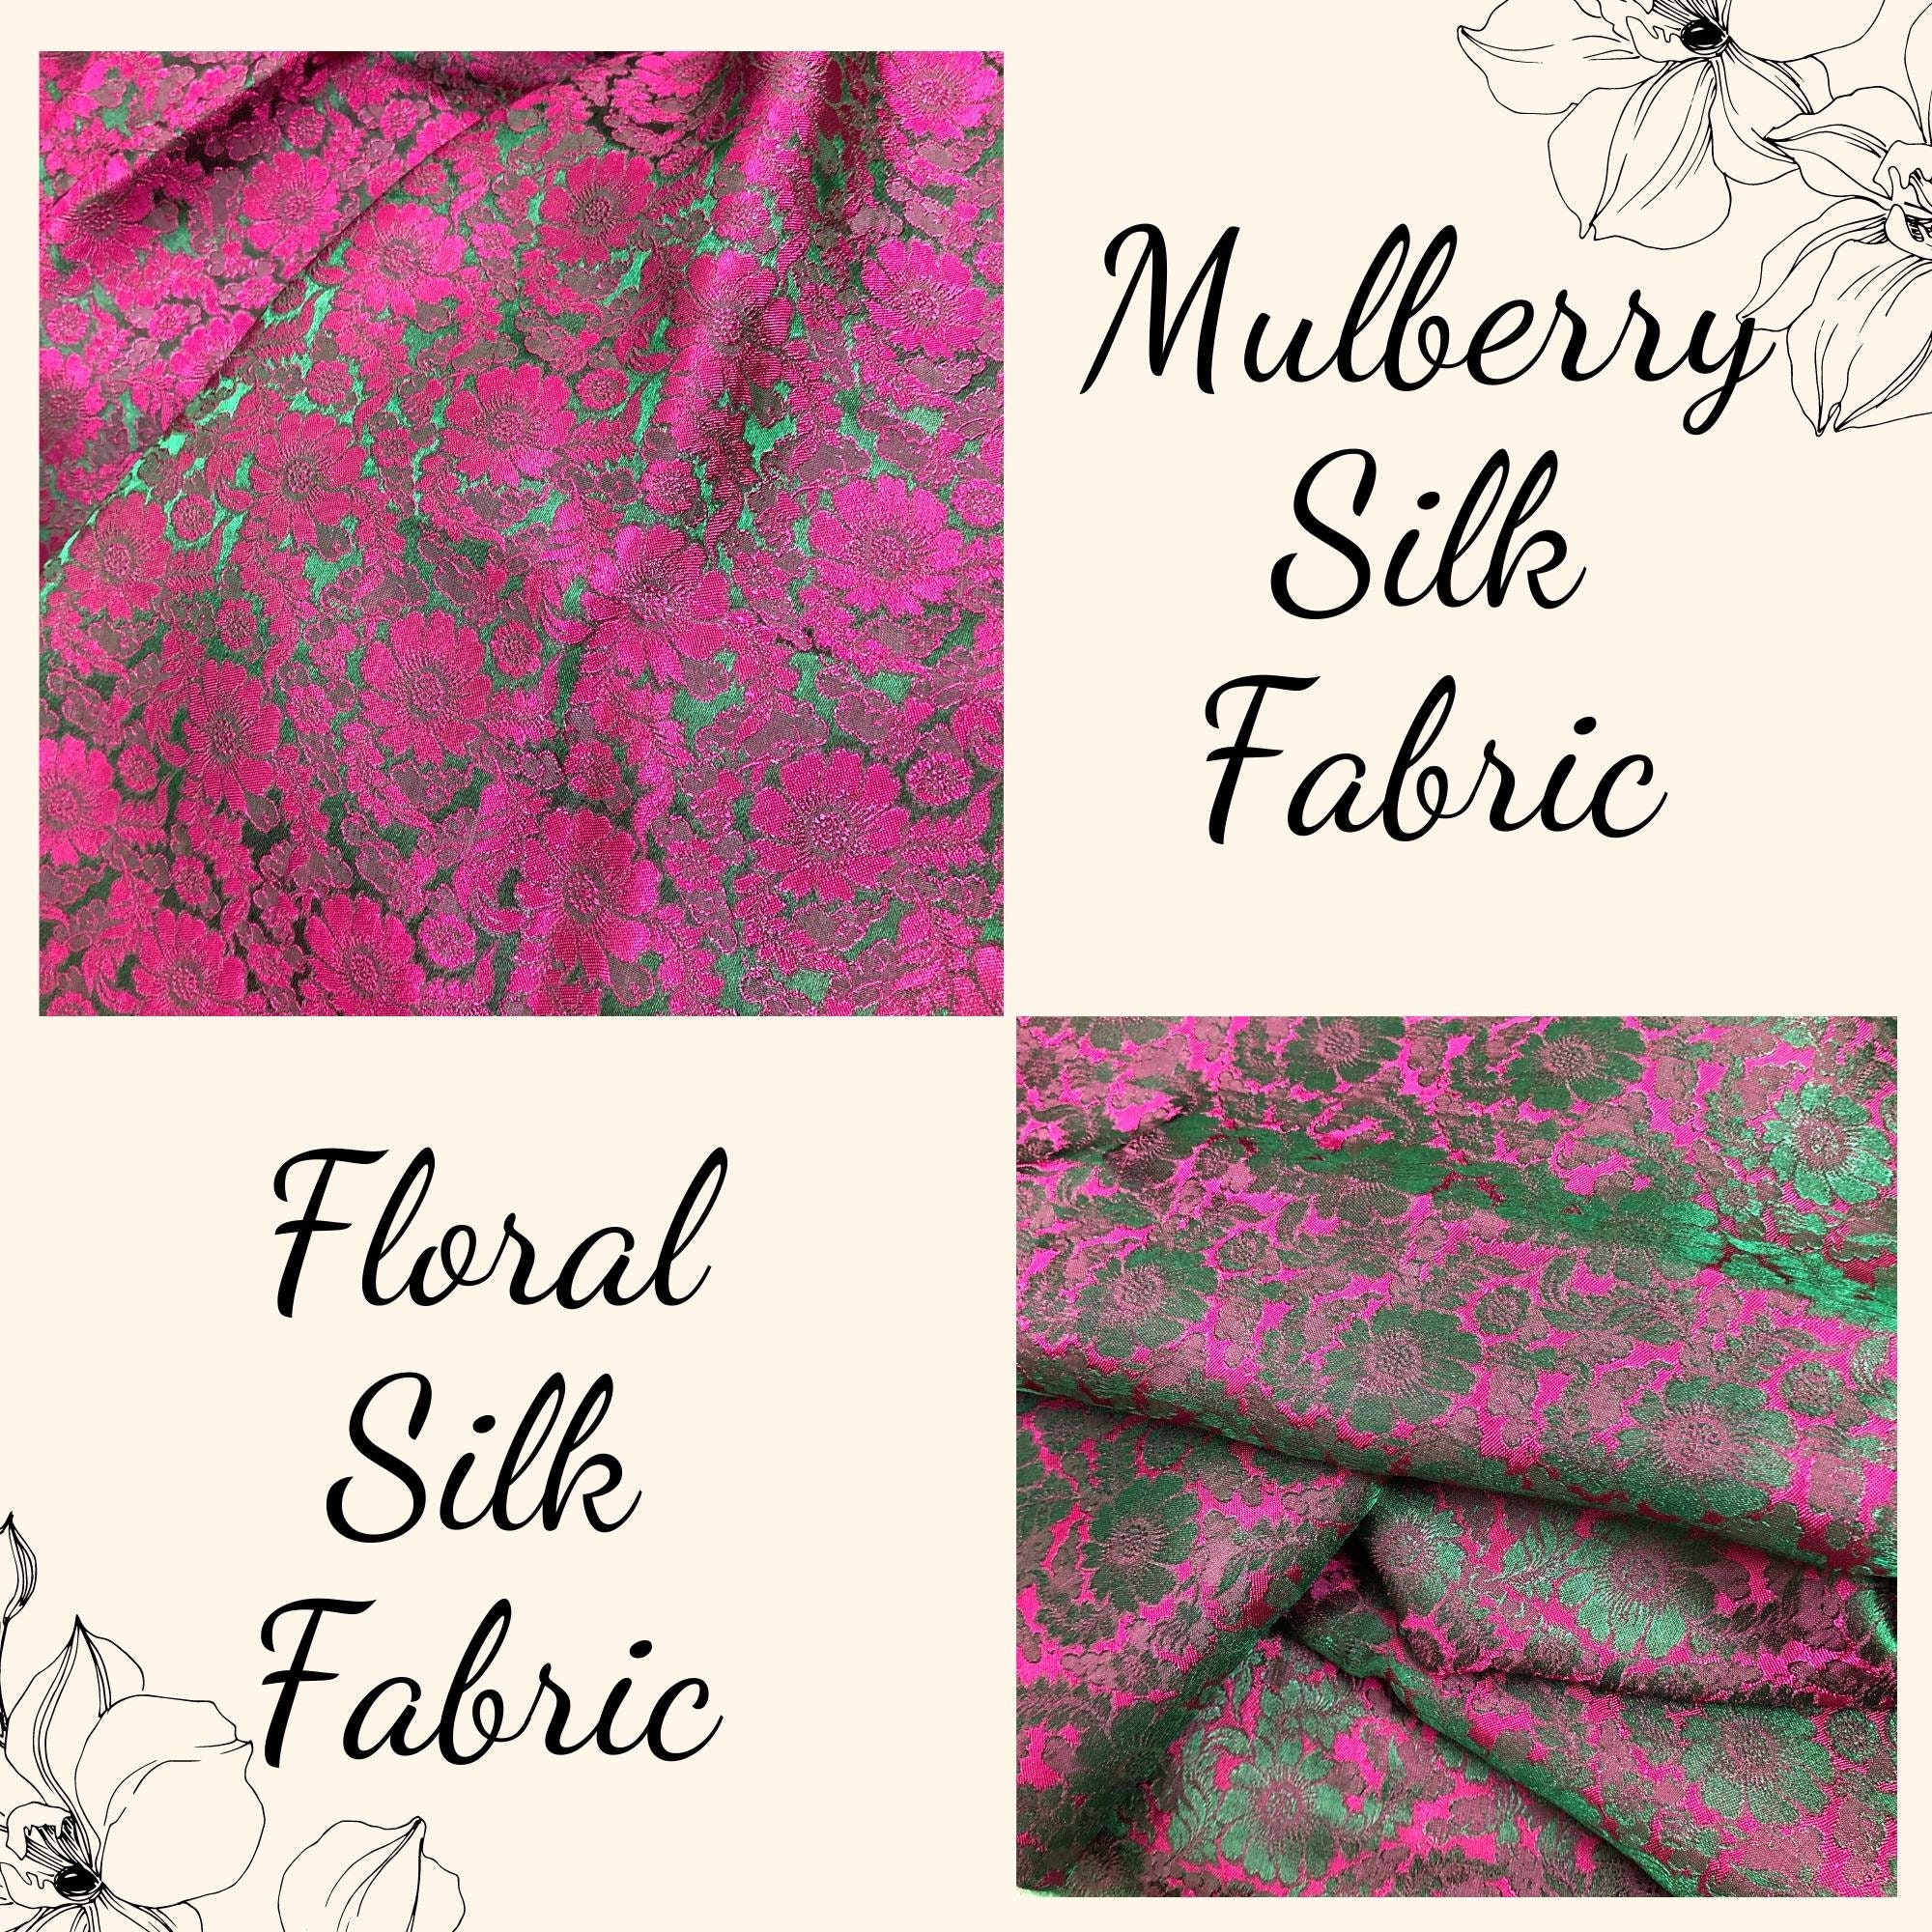 Vải Lụa Tơ Tằm hoa cúc màu hồng sen nền xanh, mềm#mượt#mịn, dệt thủ công, khổ vải 90cm